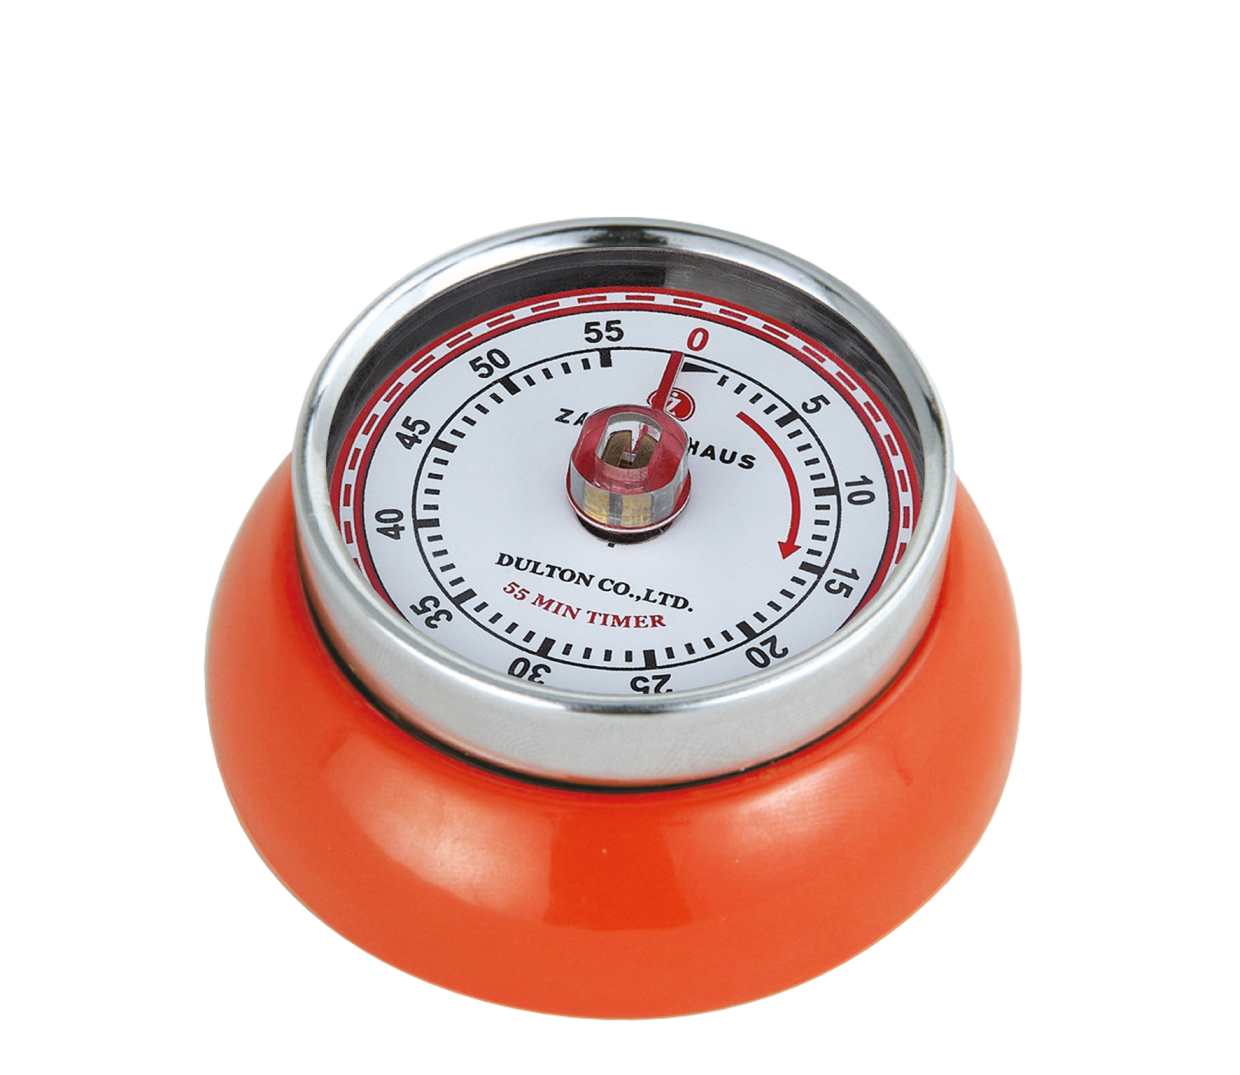 Kuchyňská magnetická minutka Speed Retro oranžová - Zassenhaus